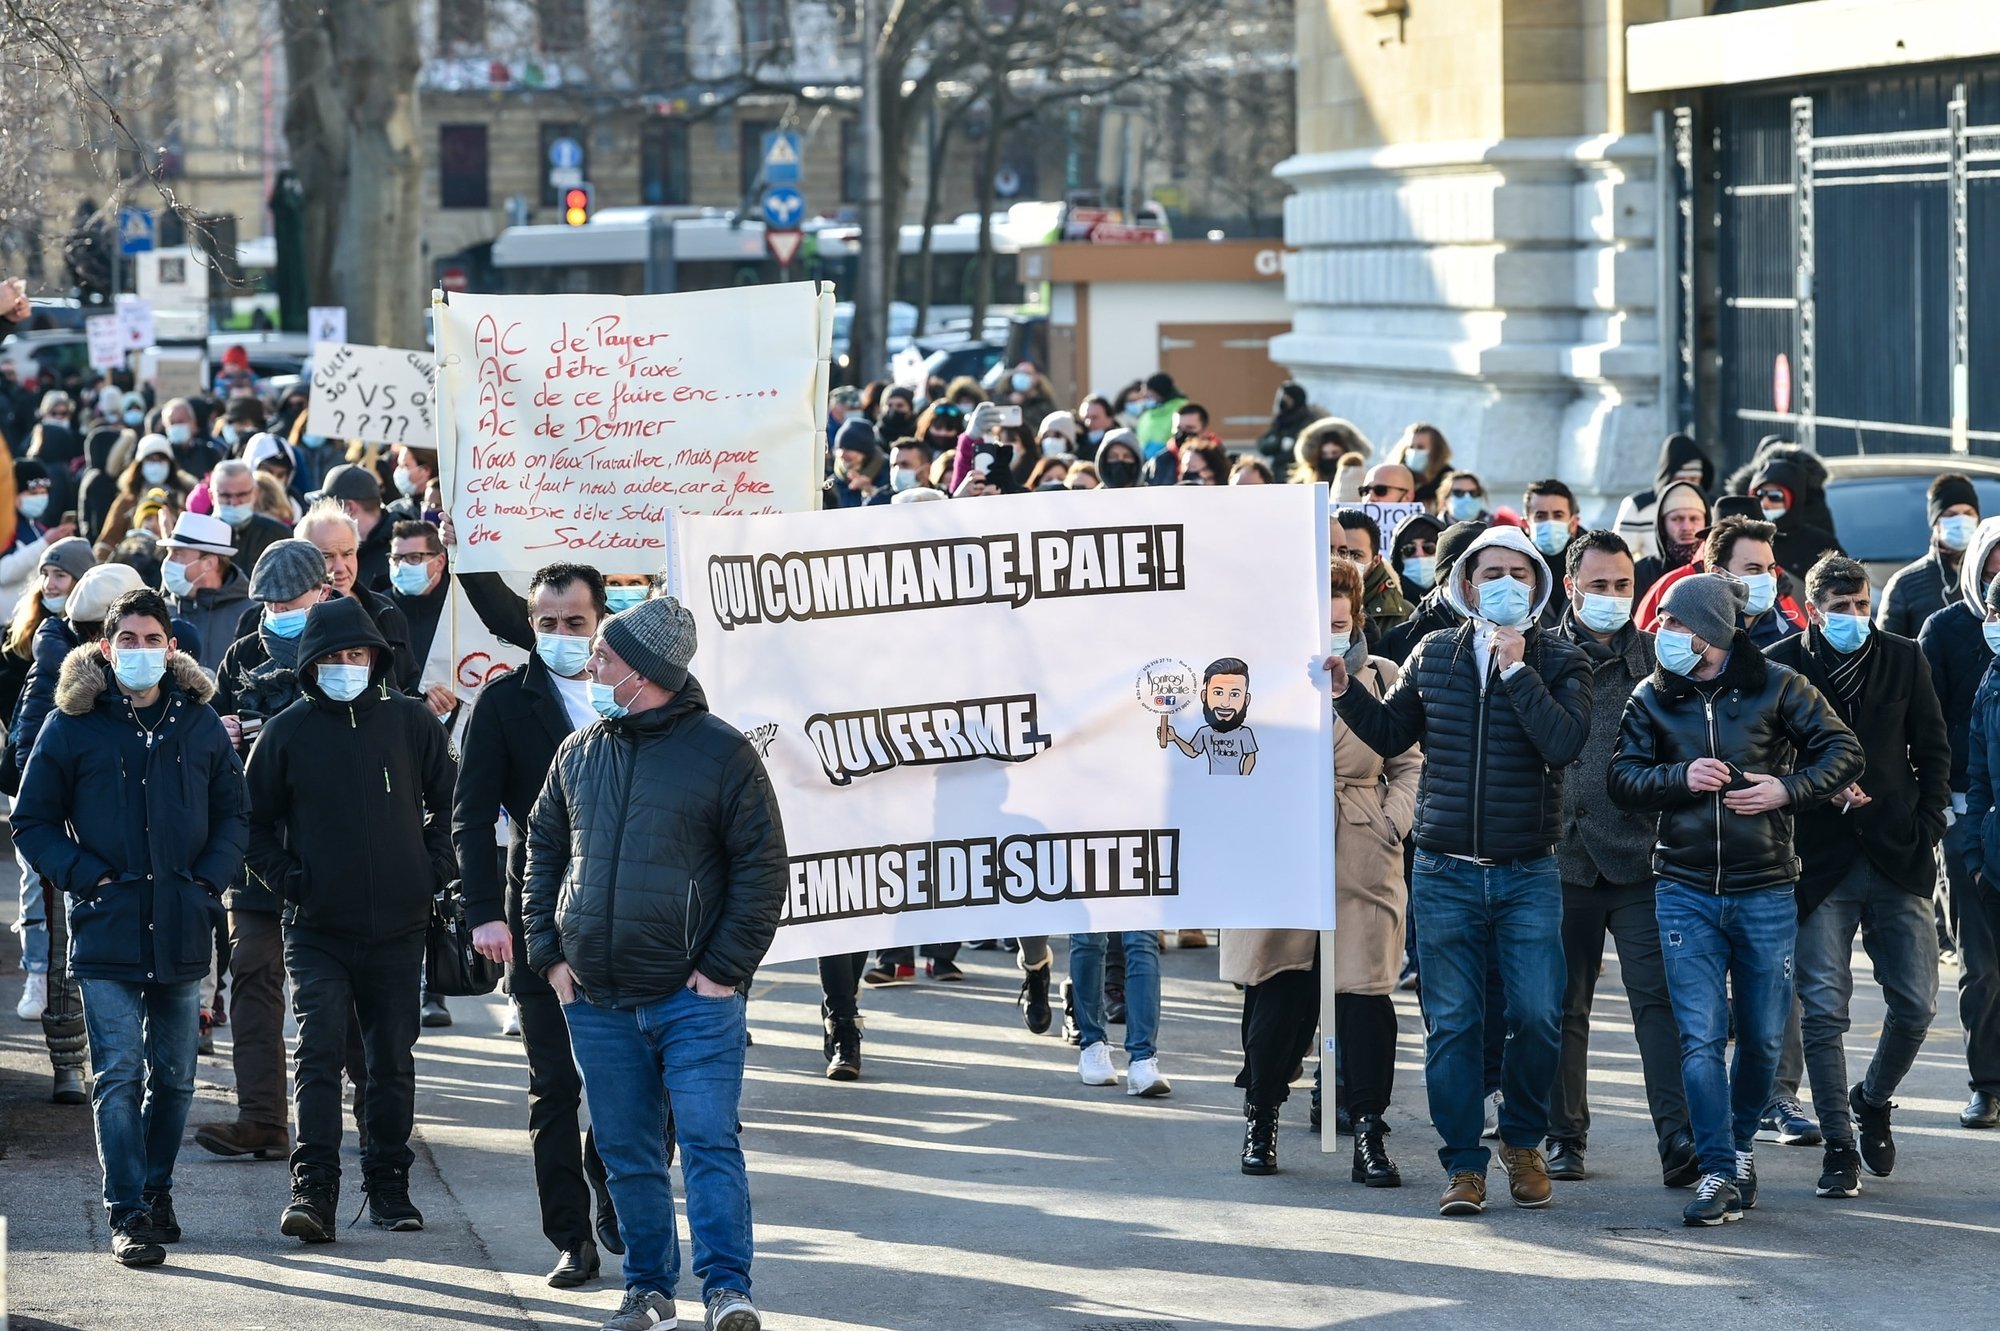 Le 9 janvier dernier, près de 500 personnes ont manifesté dans les rues de Neuchâtel en soutien aux restaurateurs.